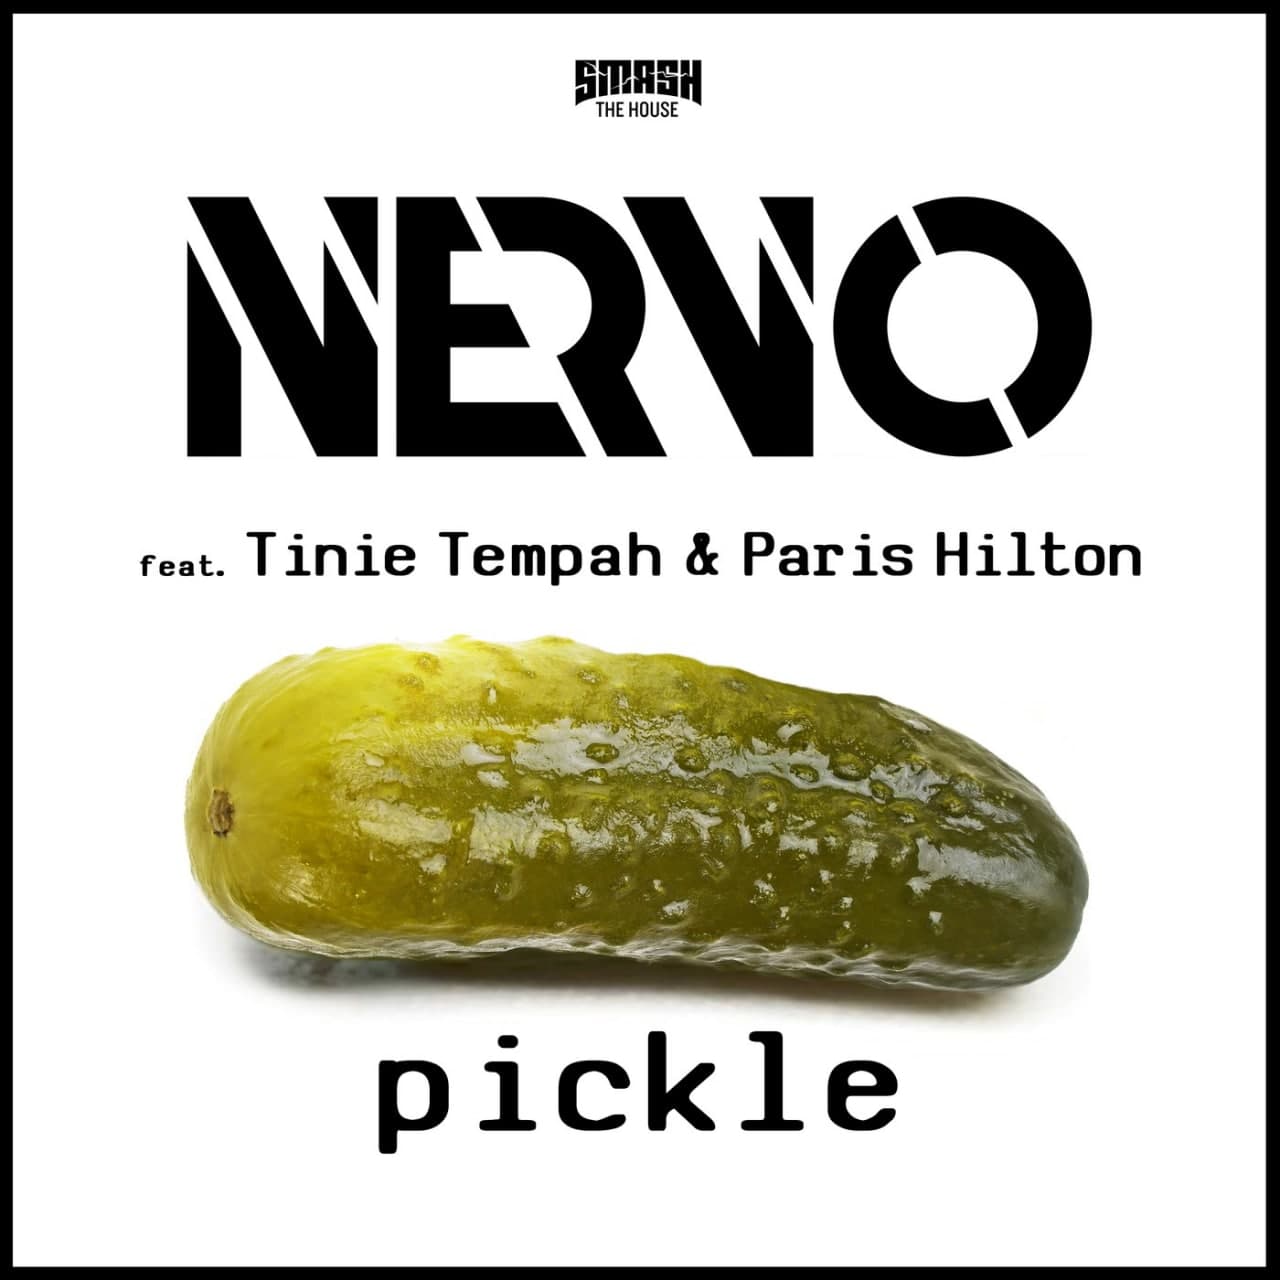 Nervo & Tinie Tempah, Paris Hilton - Pickle (Extended Mix)